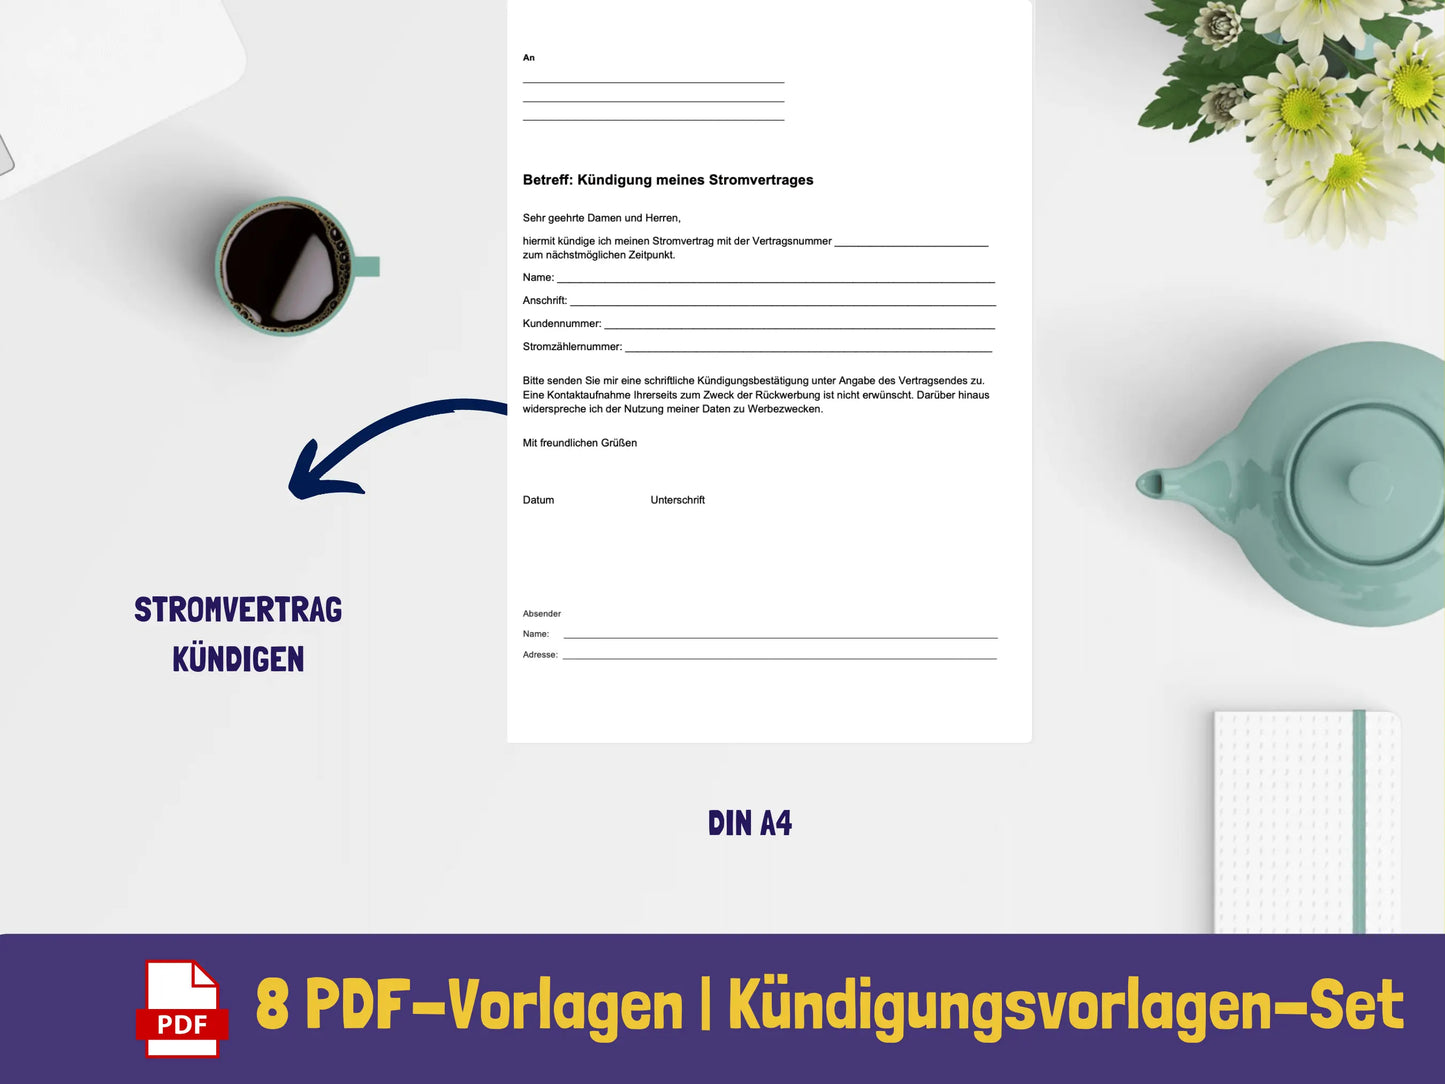 Kündigungsvorlagen PDF AndreasJansen Vorlage